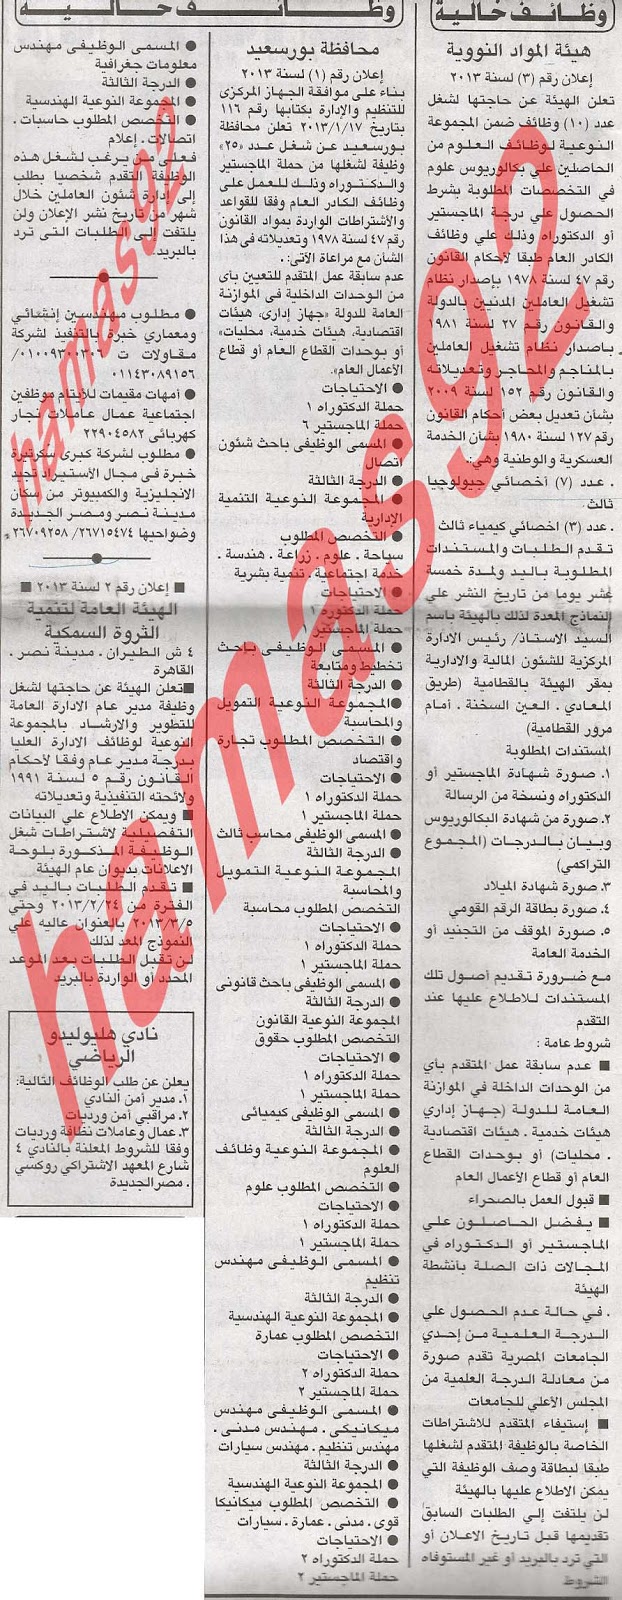 وظائف خالية من جريدة الاهرام المصرية اليوم الاربعاء 20/2/2013 %D8%A7%D9%84%D8%A7%D9%87%D8%B1%D8%A7%D9%85+1